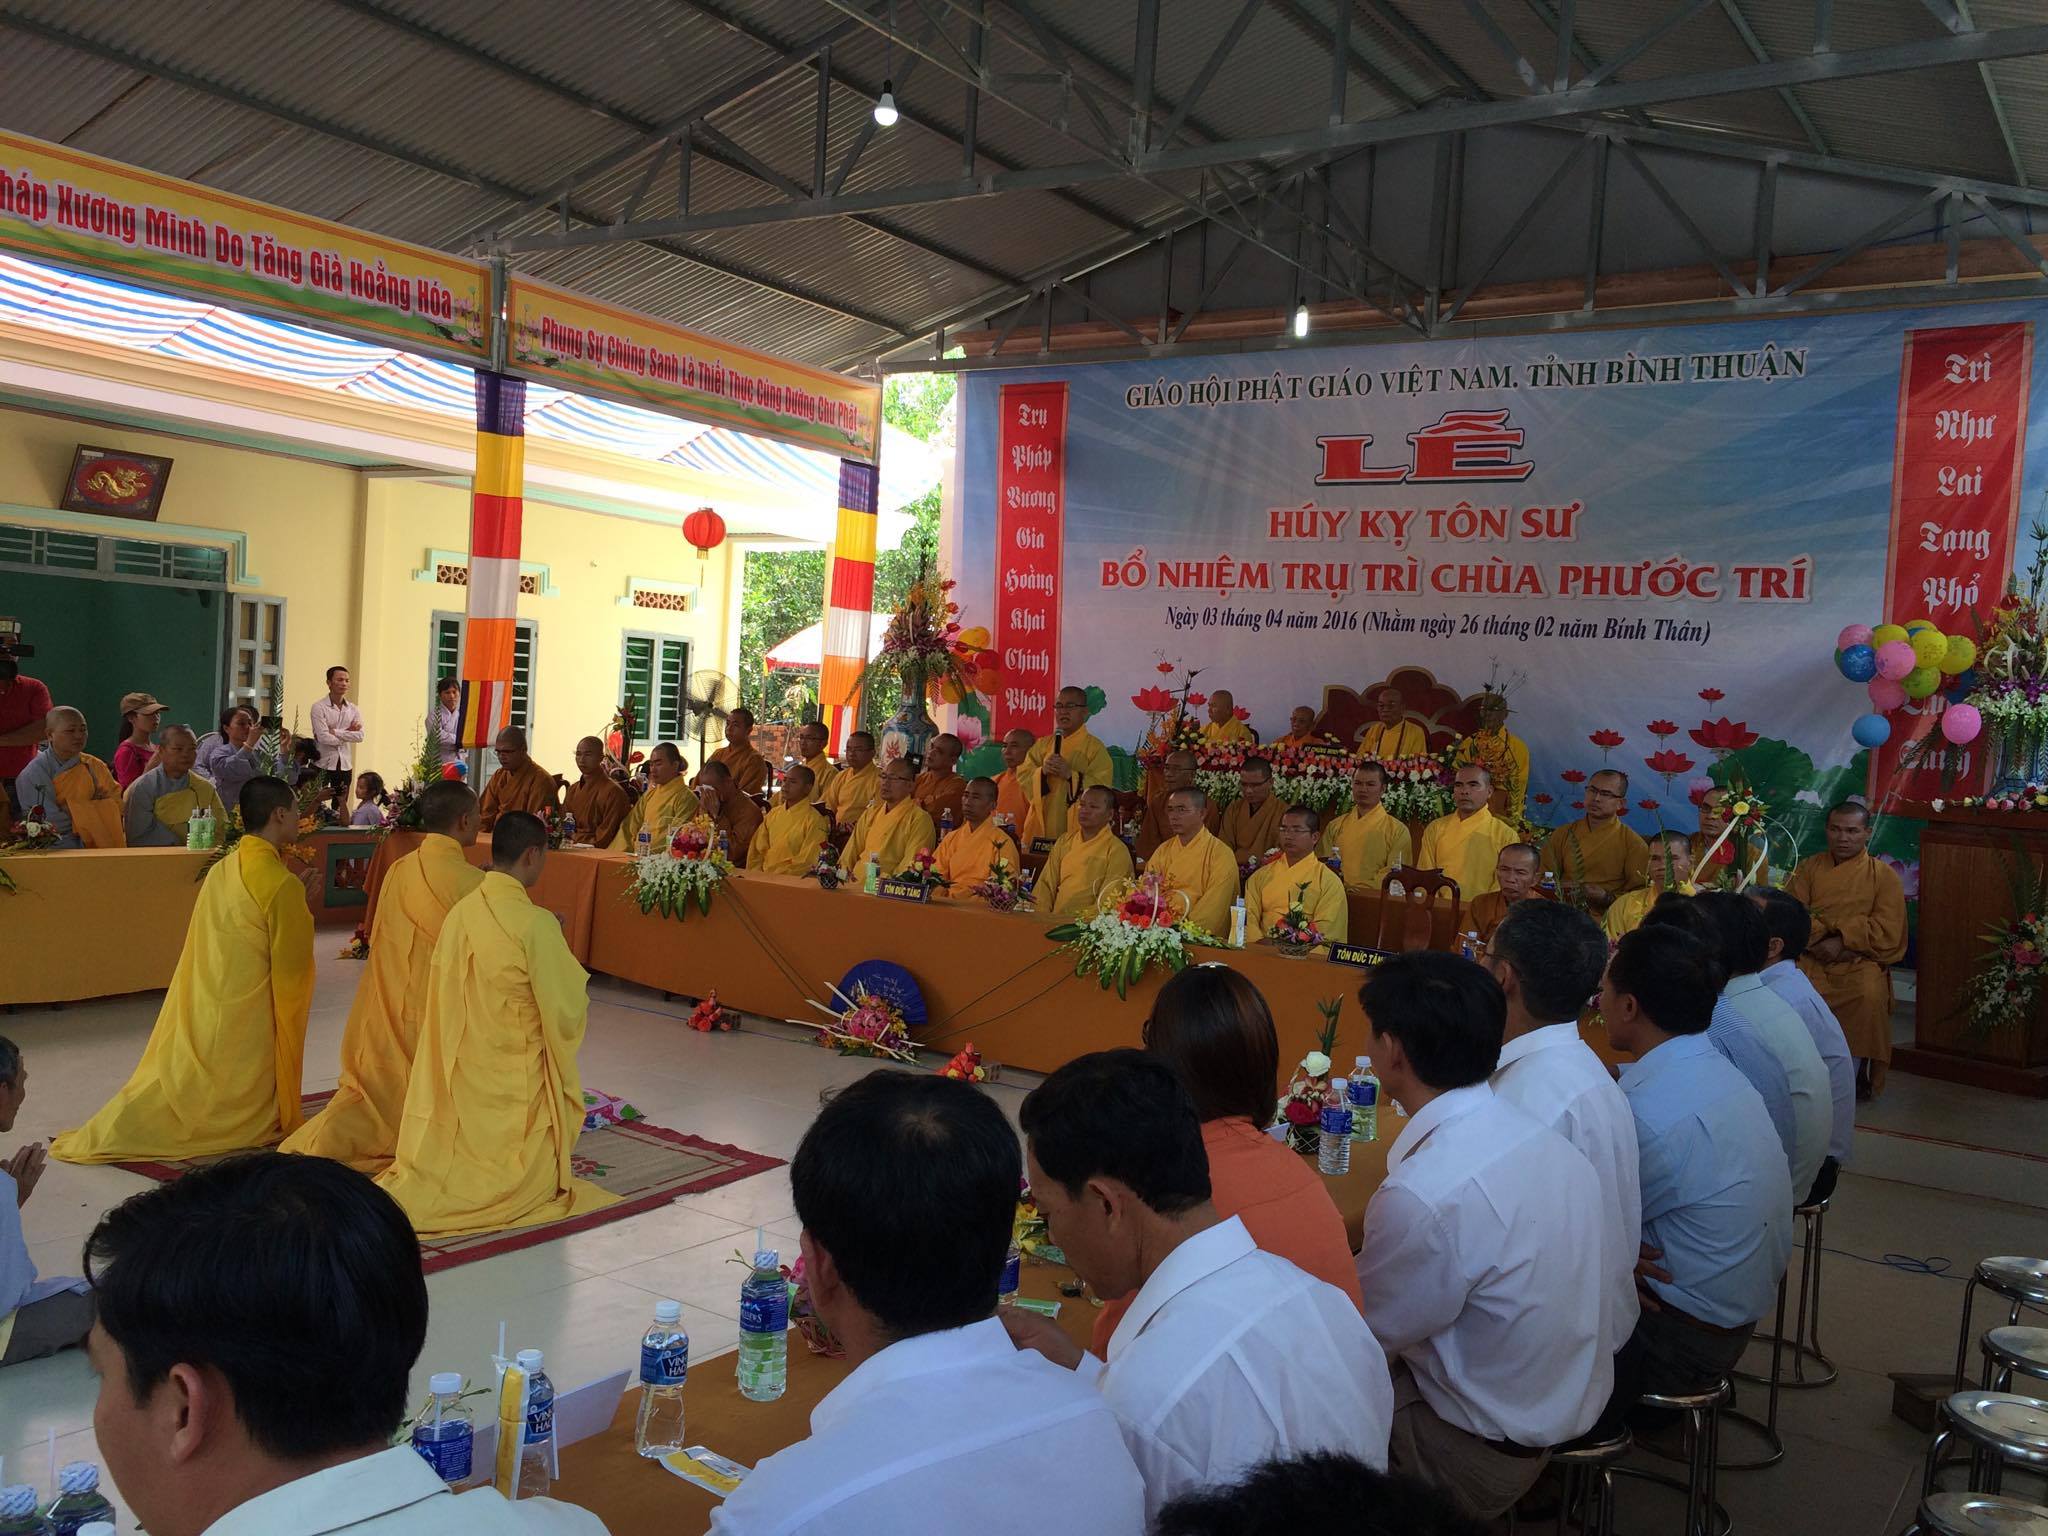 Bình Thuận: Lễ bổ nhiệm trụ trì chùa Phước Trí